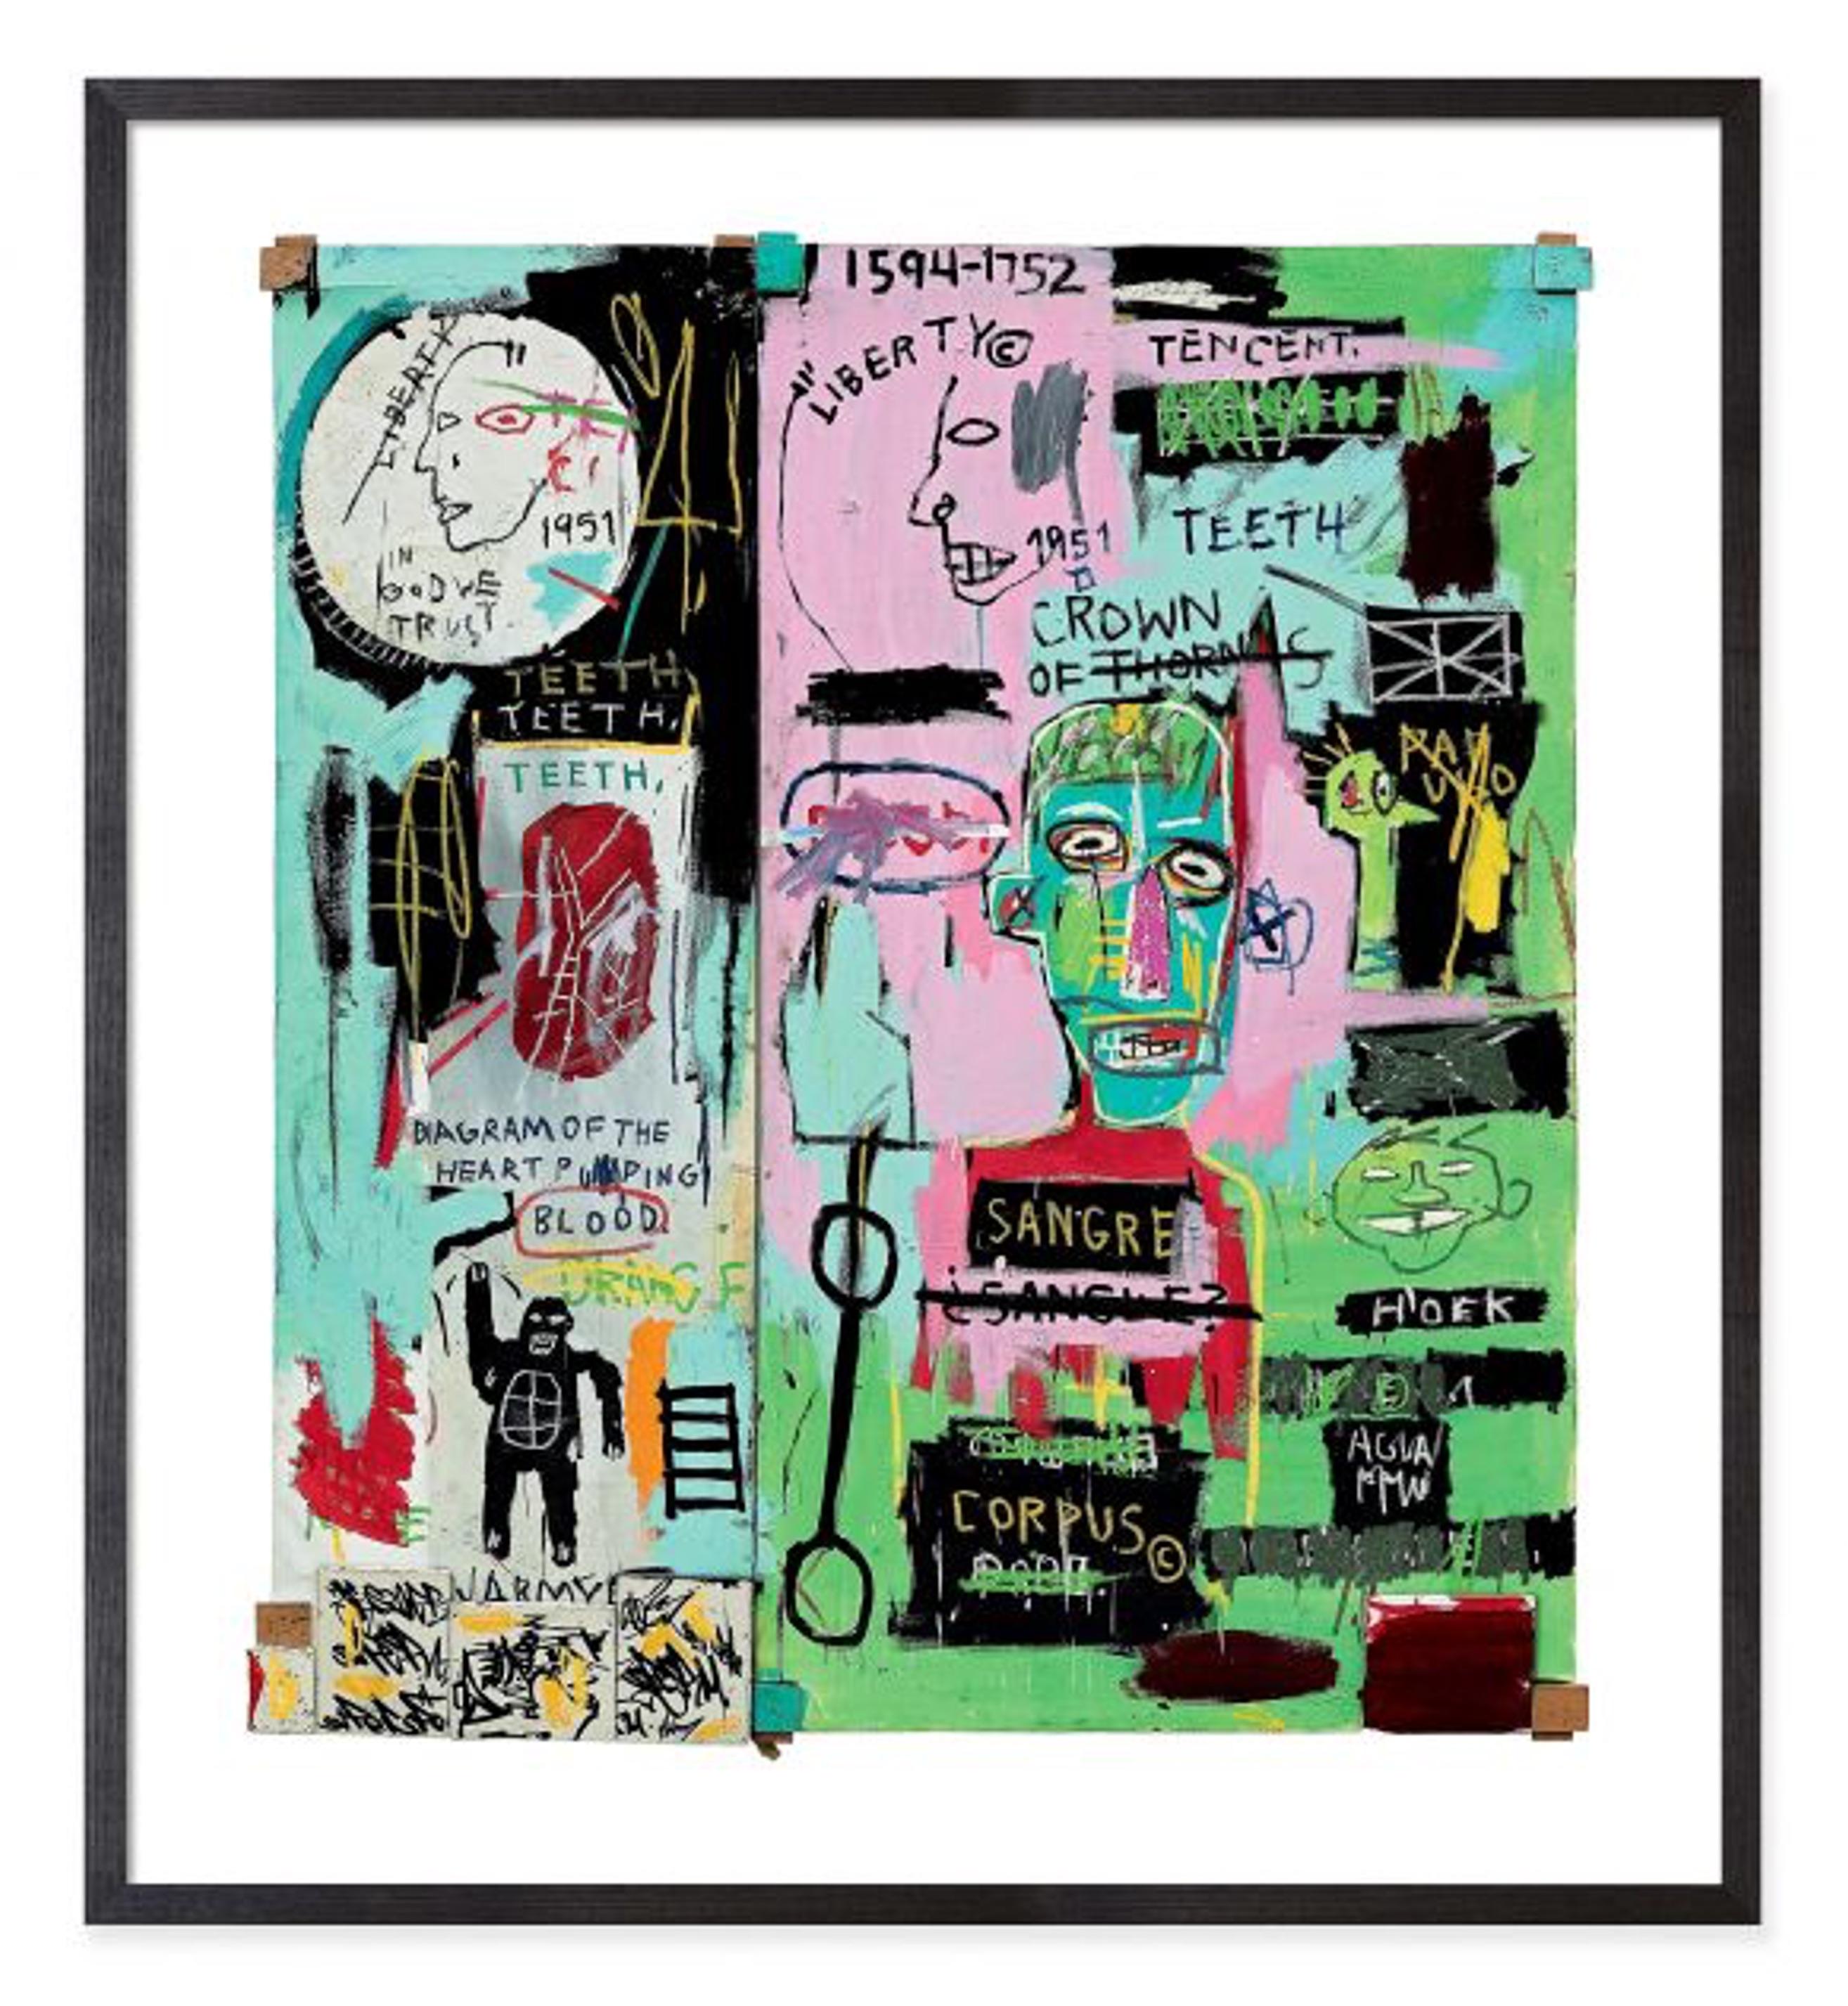 Jean-Michel Basquiat - En italien (encadré)

Taille - 29h x 26w x 1 "d

MATERIAL - Impression sur papier encadrée en bois

Description
Cette impression encadrée de Jean-Michel Basquiat présente une reproduction de In Italian (1983), une œuvre de